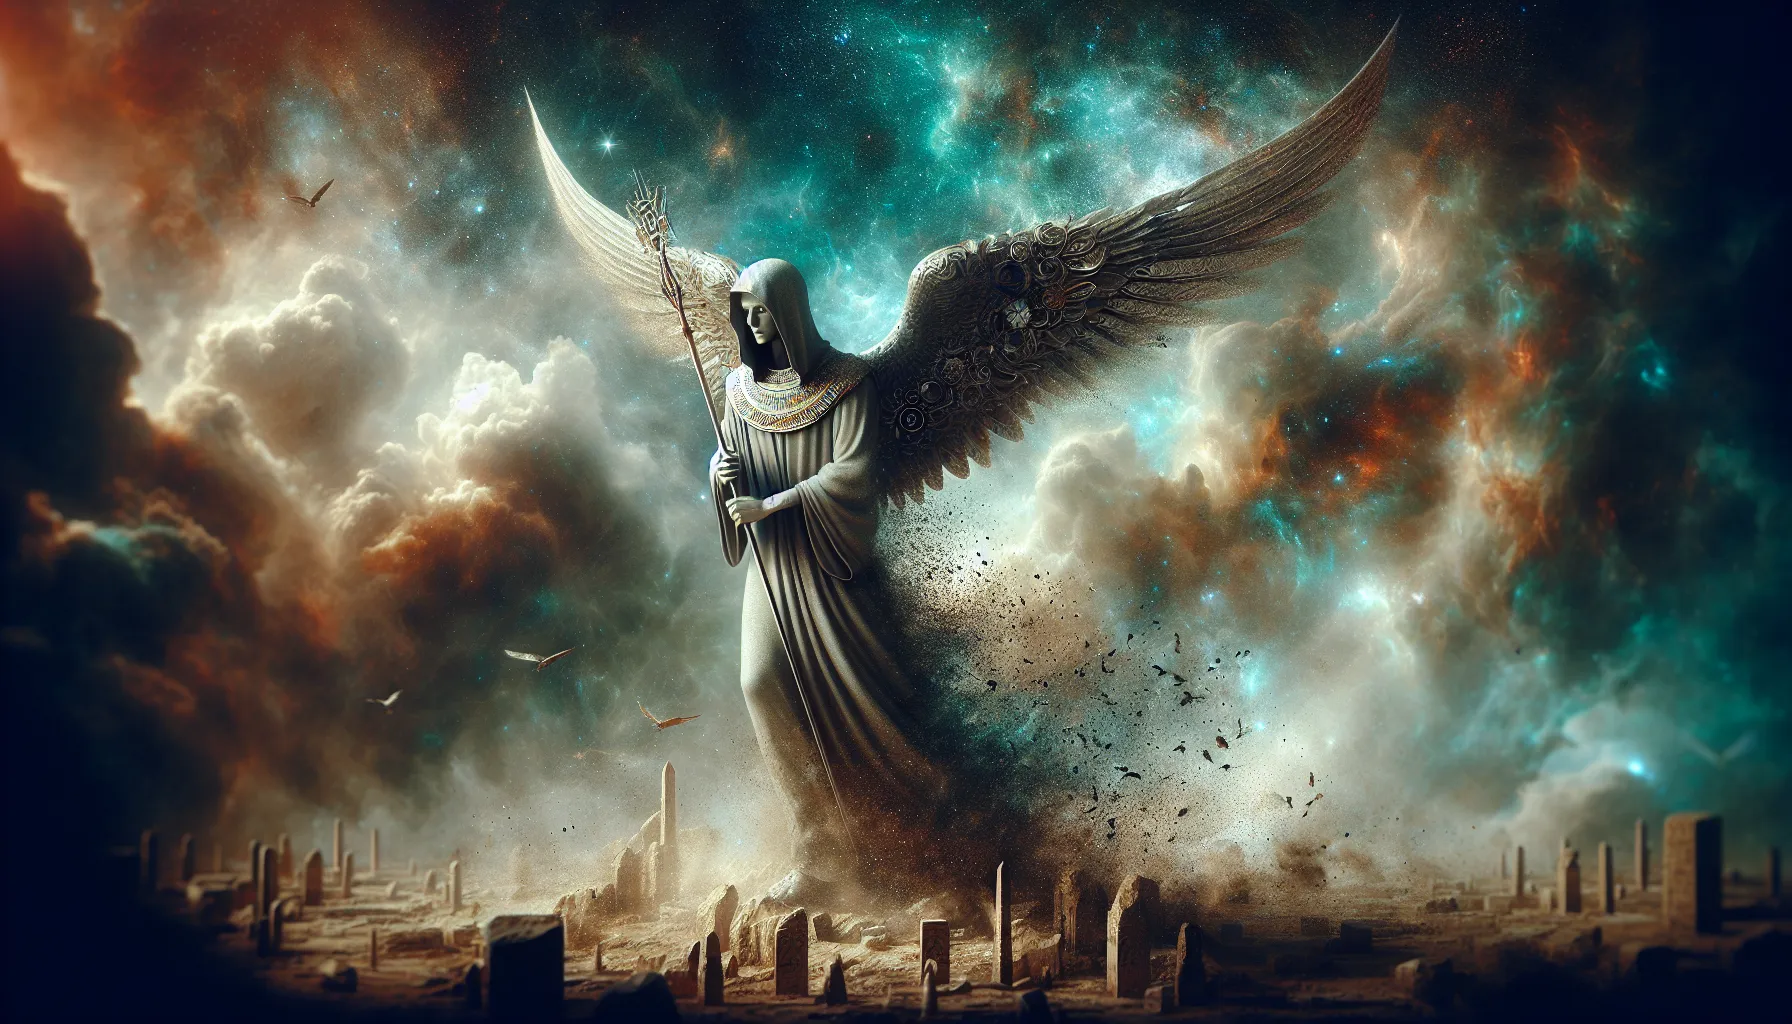 Representación artística del Ángel Destructor descrito en la historia de la Última Plaga de Egipto.